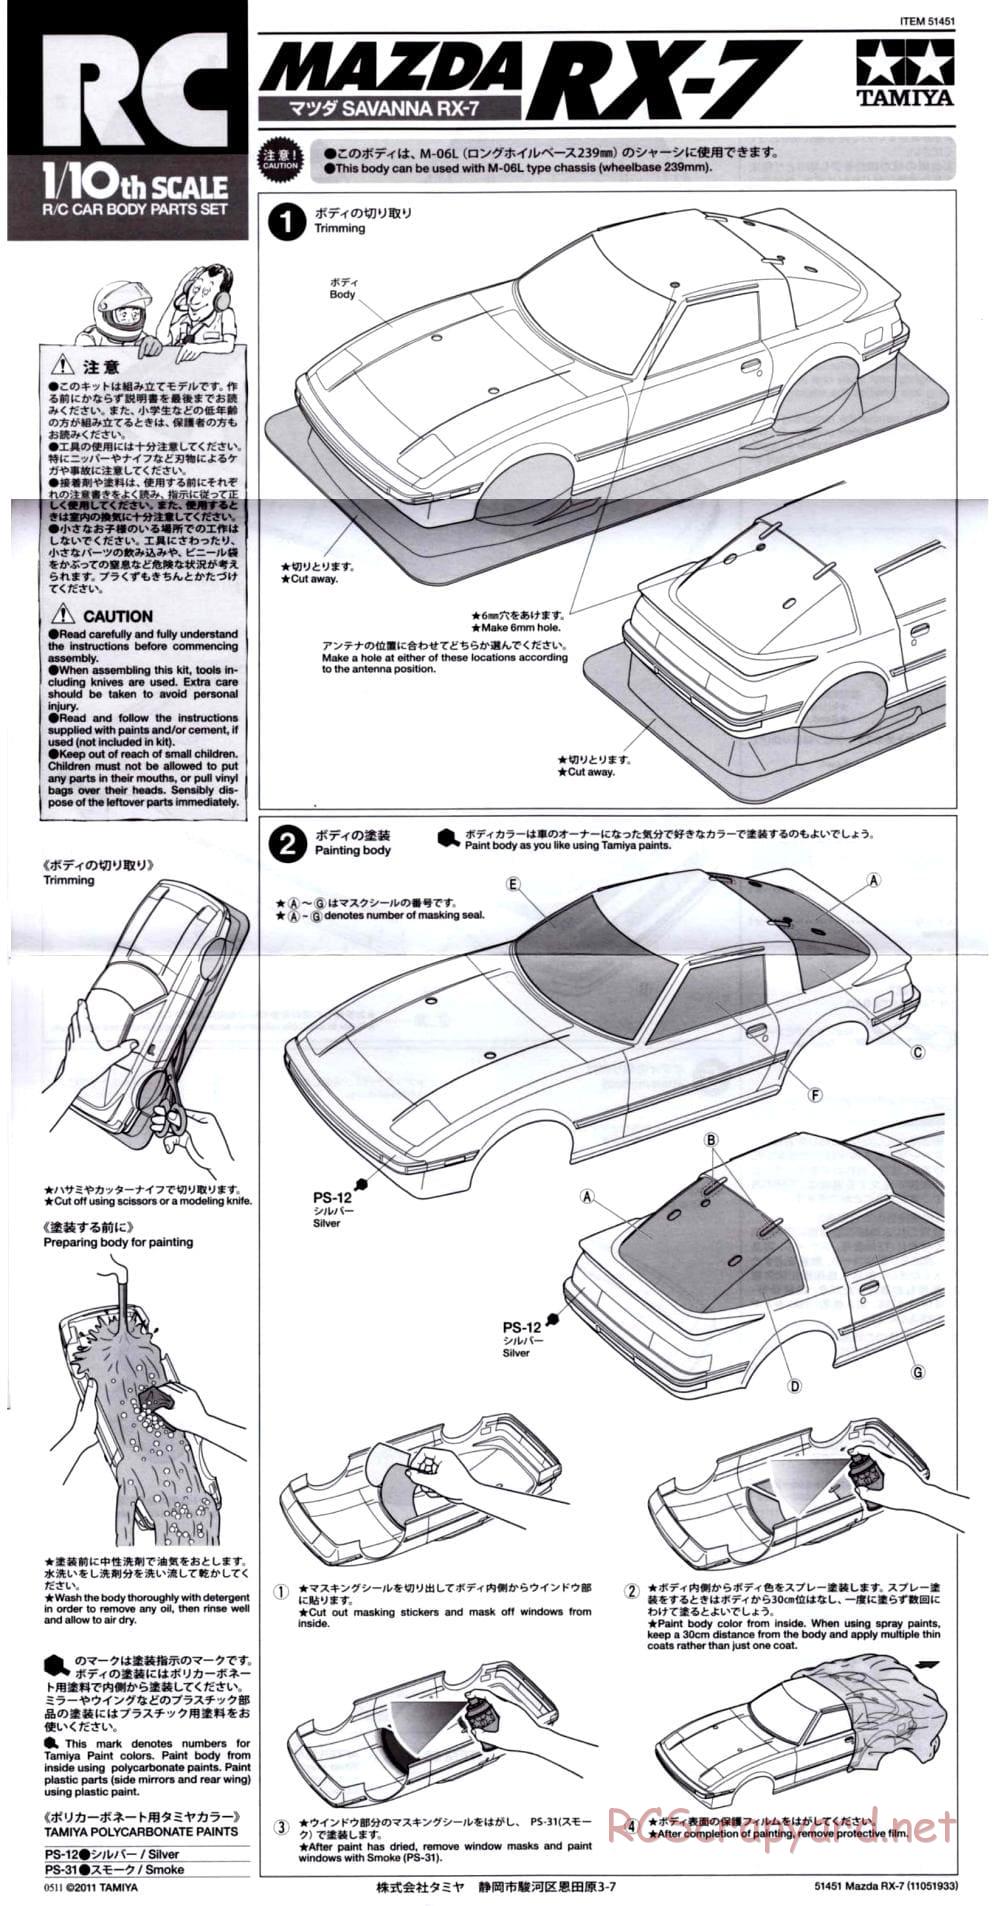 Tamiya - Mazda RX-7 - M-06 Chassis - Body Manual - Page 1